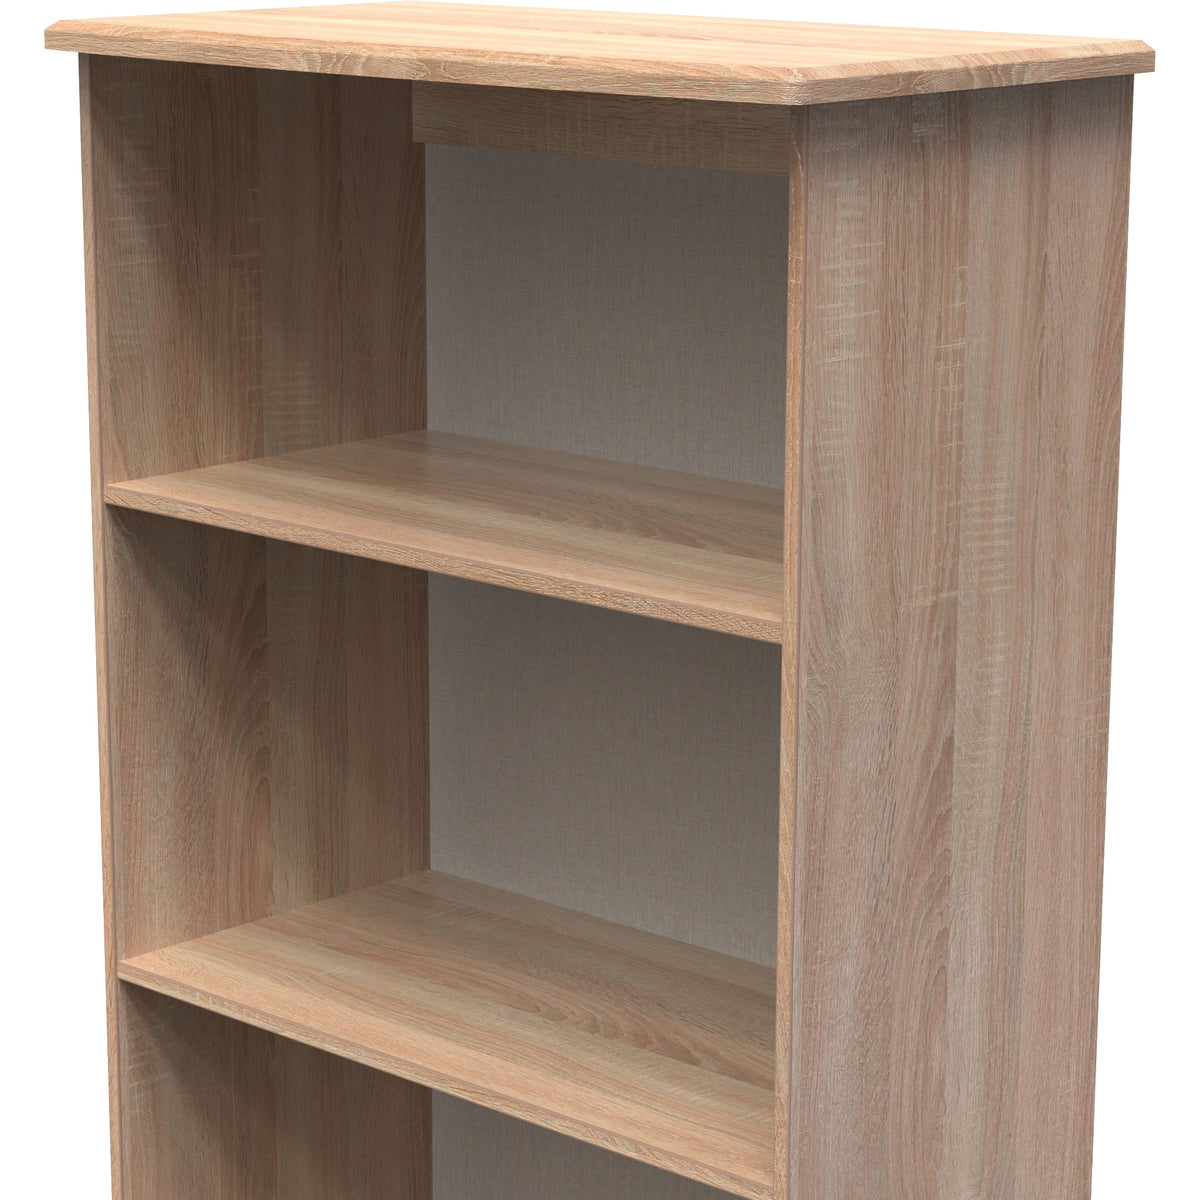 Beckett Light Wood 3 Shelf Bookcase